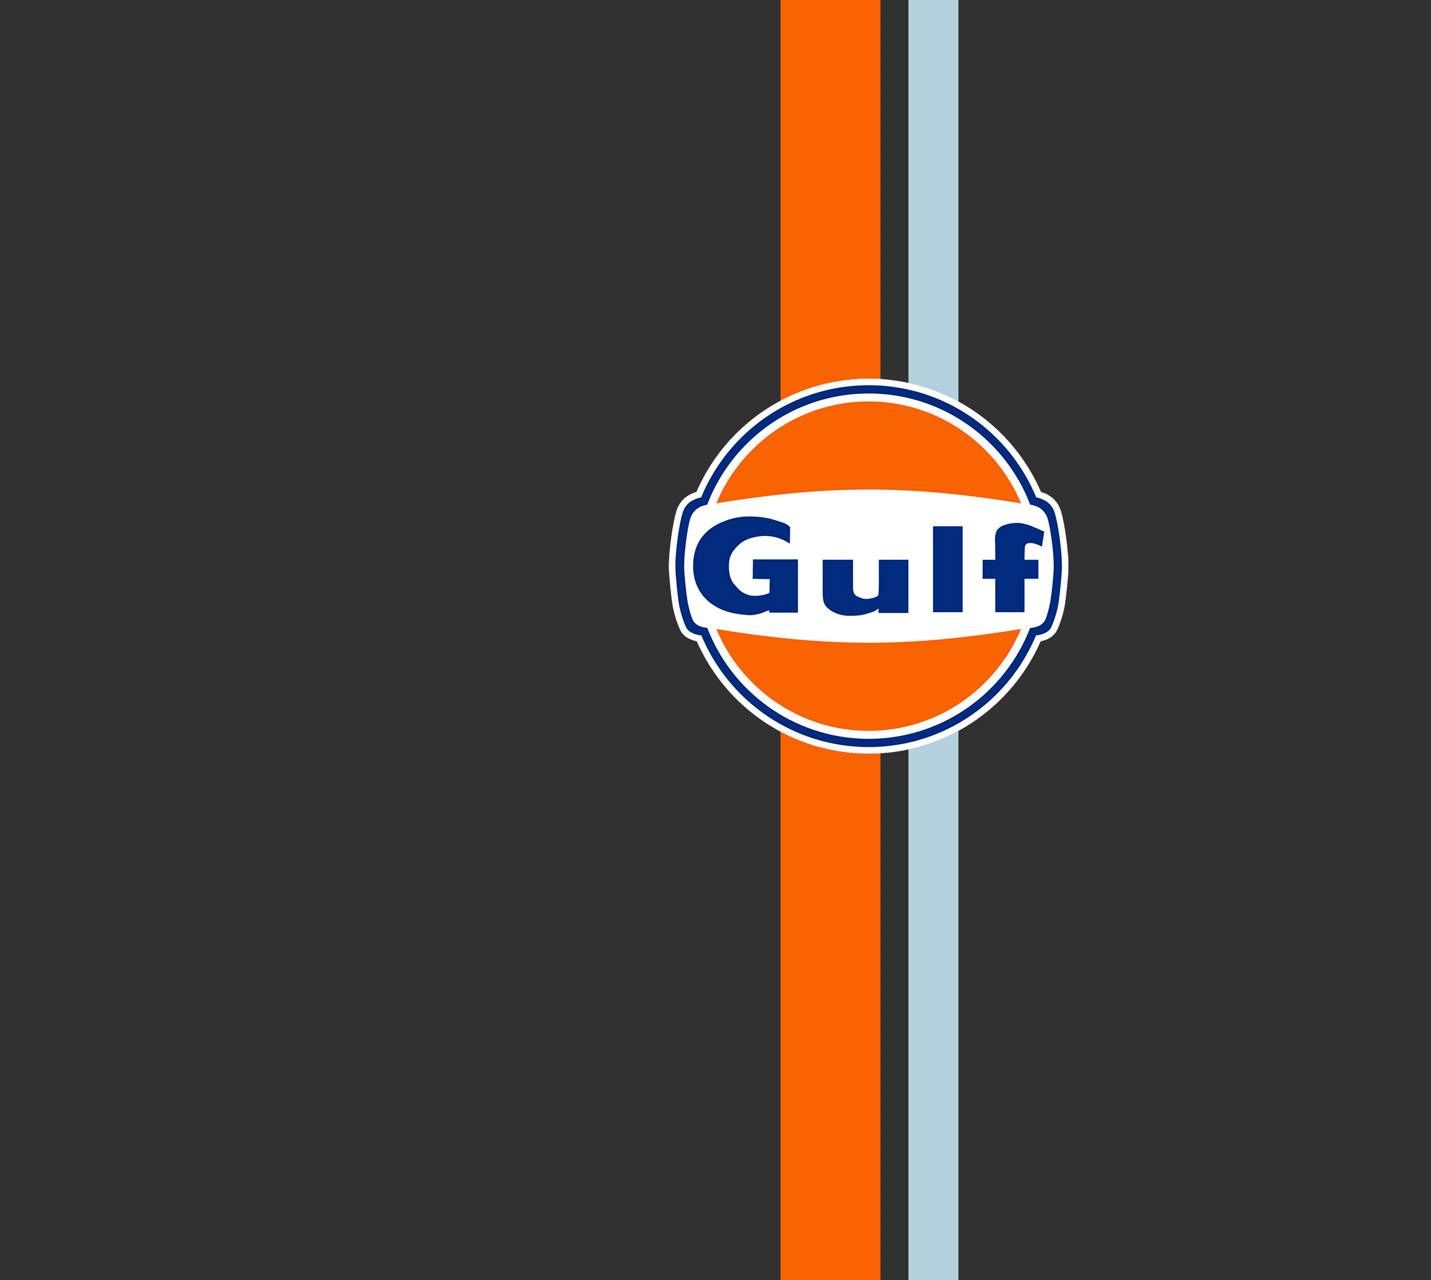 Gulf Wallpaper Free Gulf Background